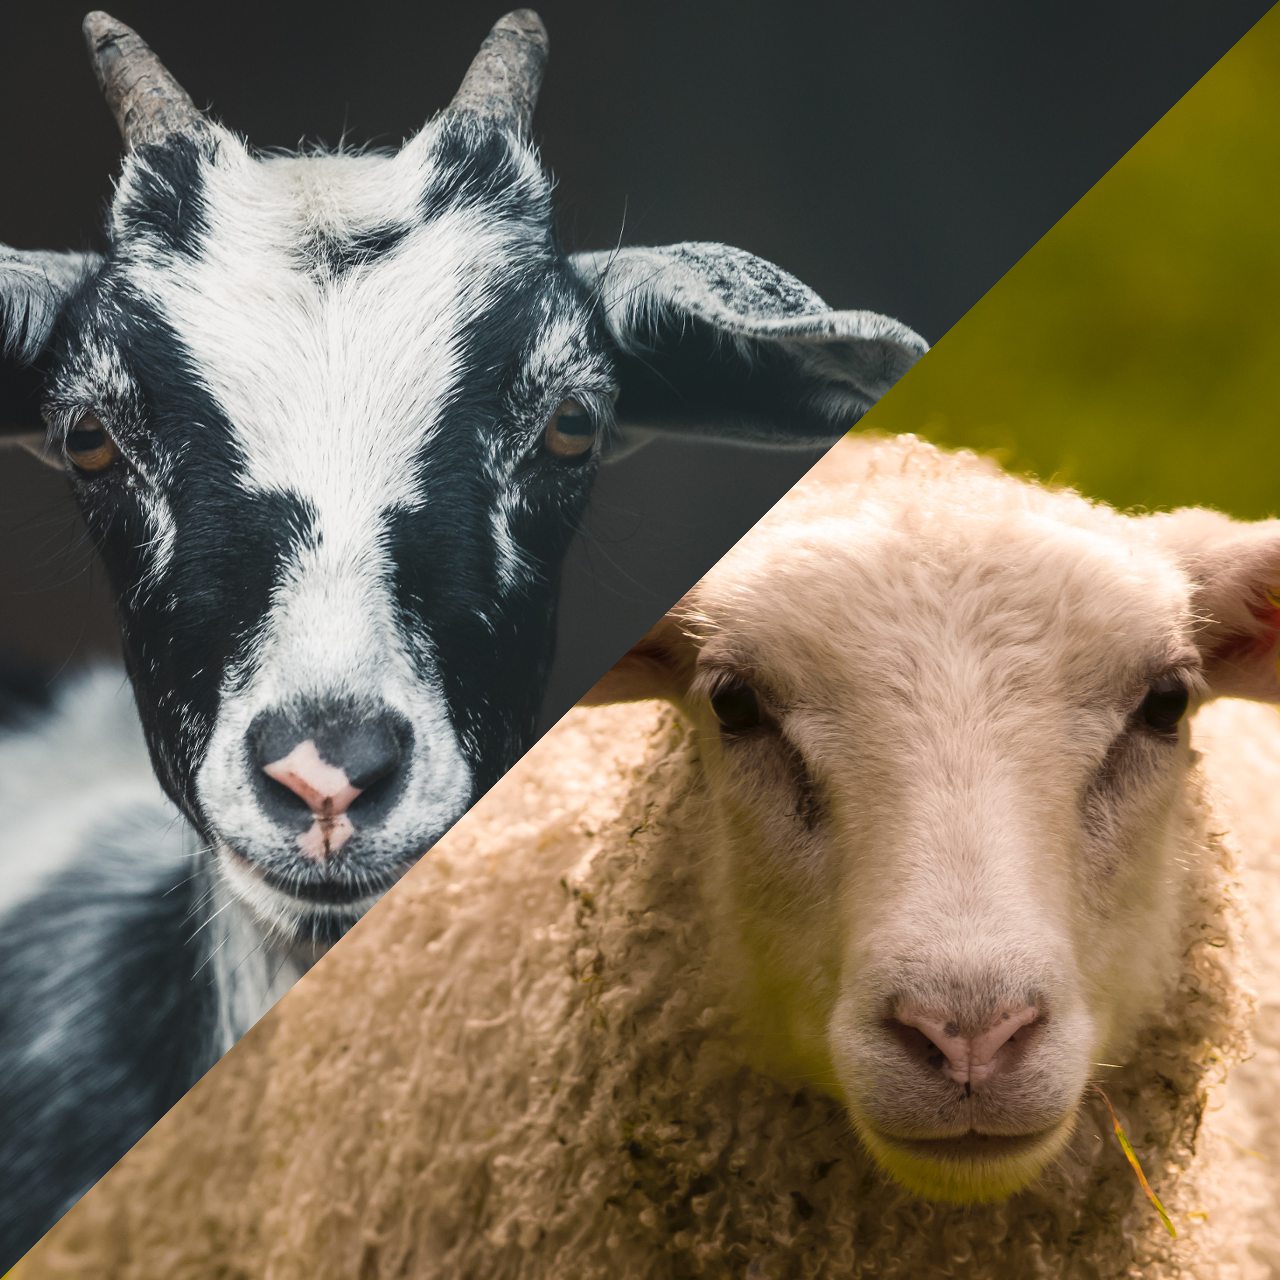 Primer congreso internacional de producción ovina y caprina